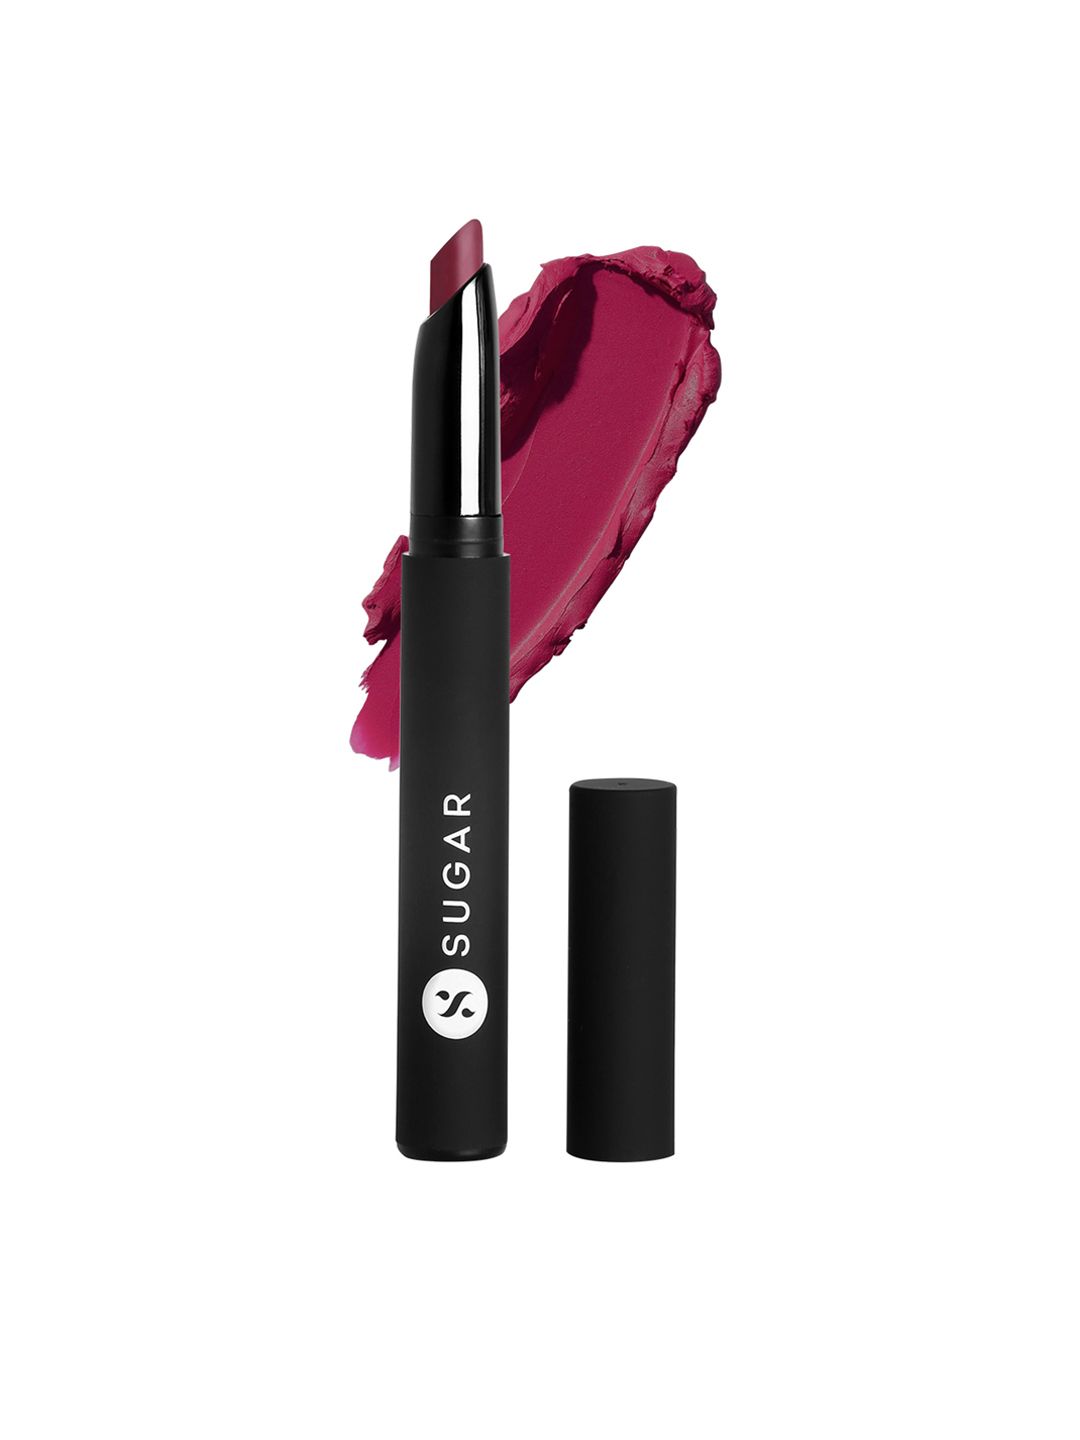 SUGAR Cosmetics Matte Attack Transferproof Lipstick - 01 Bold Play Price in India